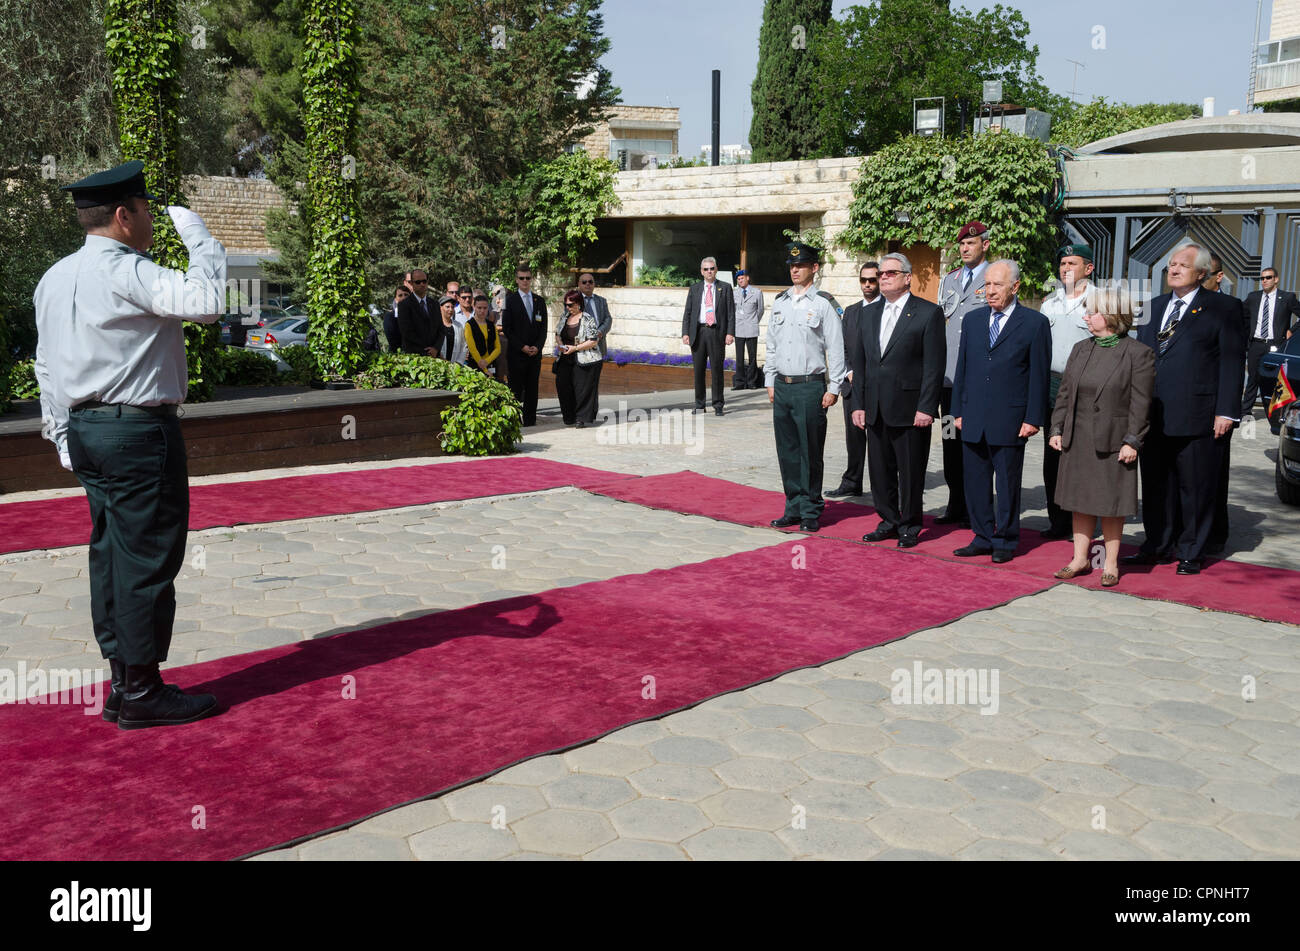 Le président israélien Shimon Peres et son homologue allemand Joachim Gauck revoir une garde d'honneur militaire au cours d'une cérémonie de bienvenue Banque D'Images